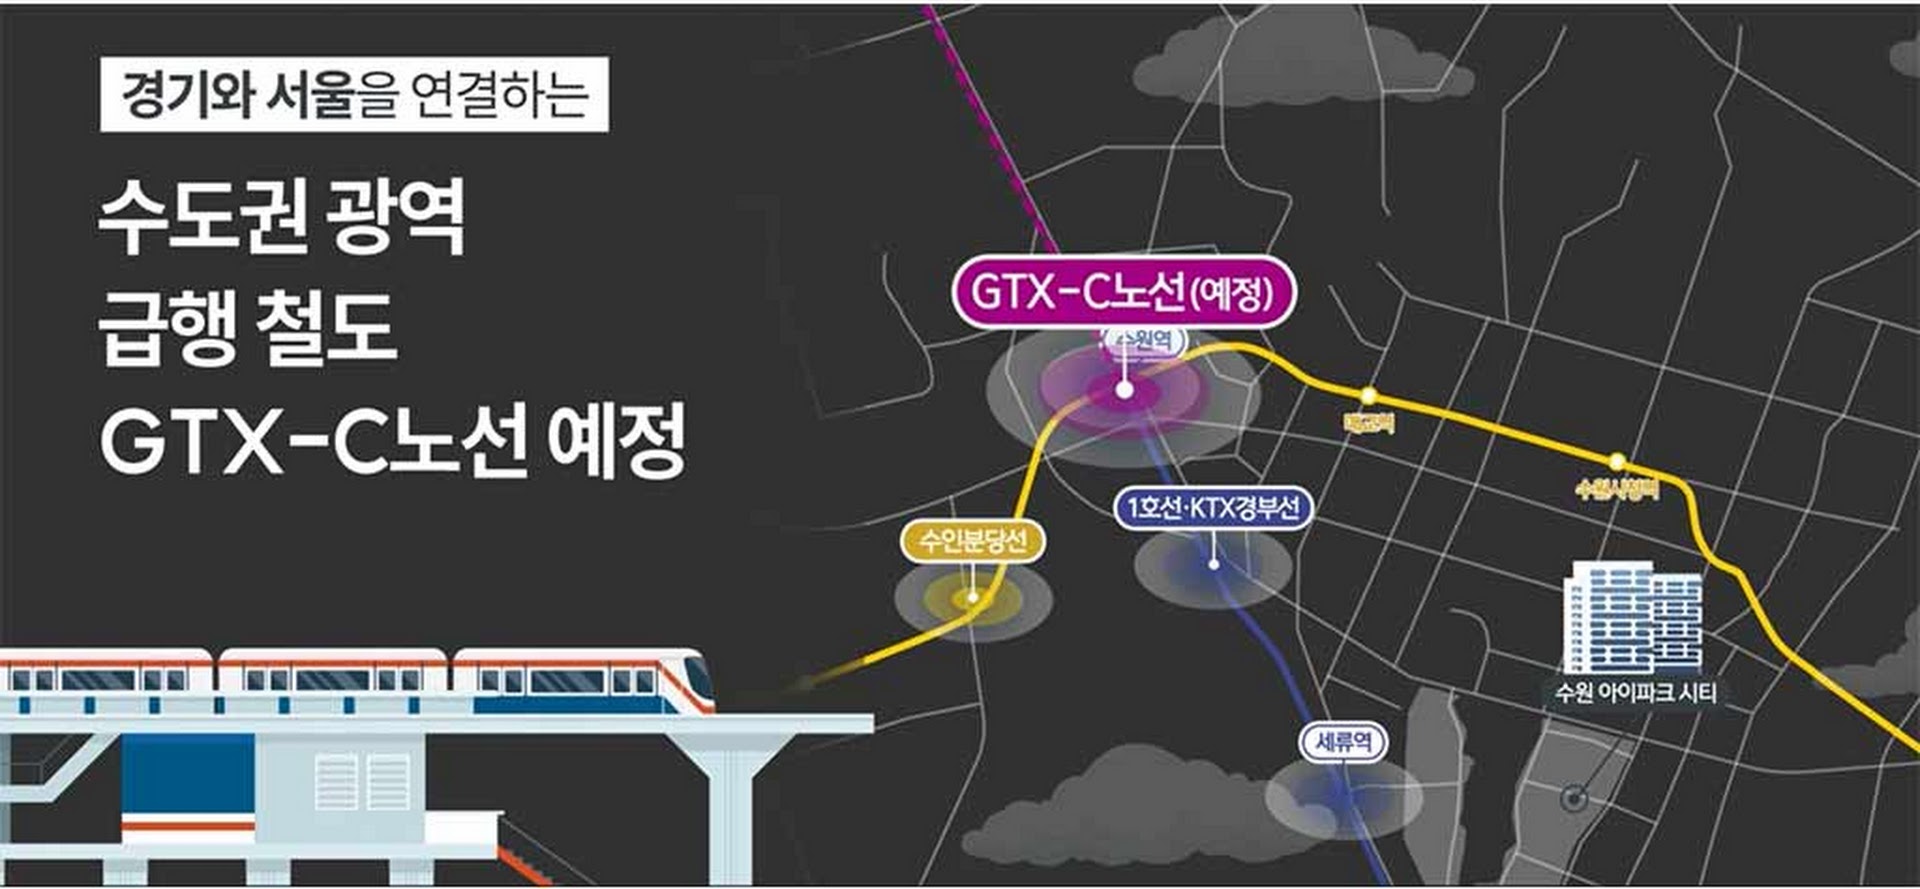 수원-아이파크시티-gtx노선-예정으로-경기와-서을을-연결하는-수도권-광역교통망.jpg